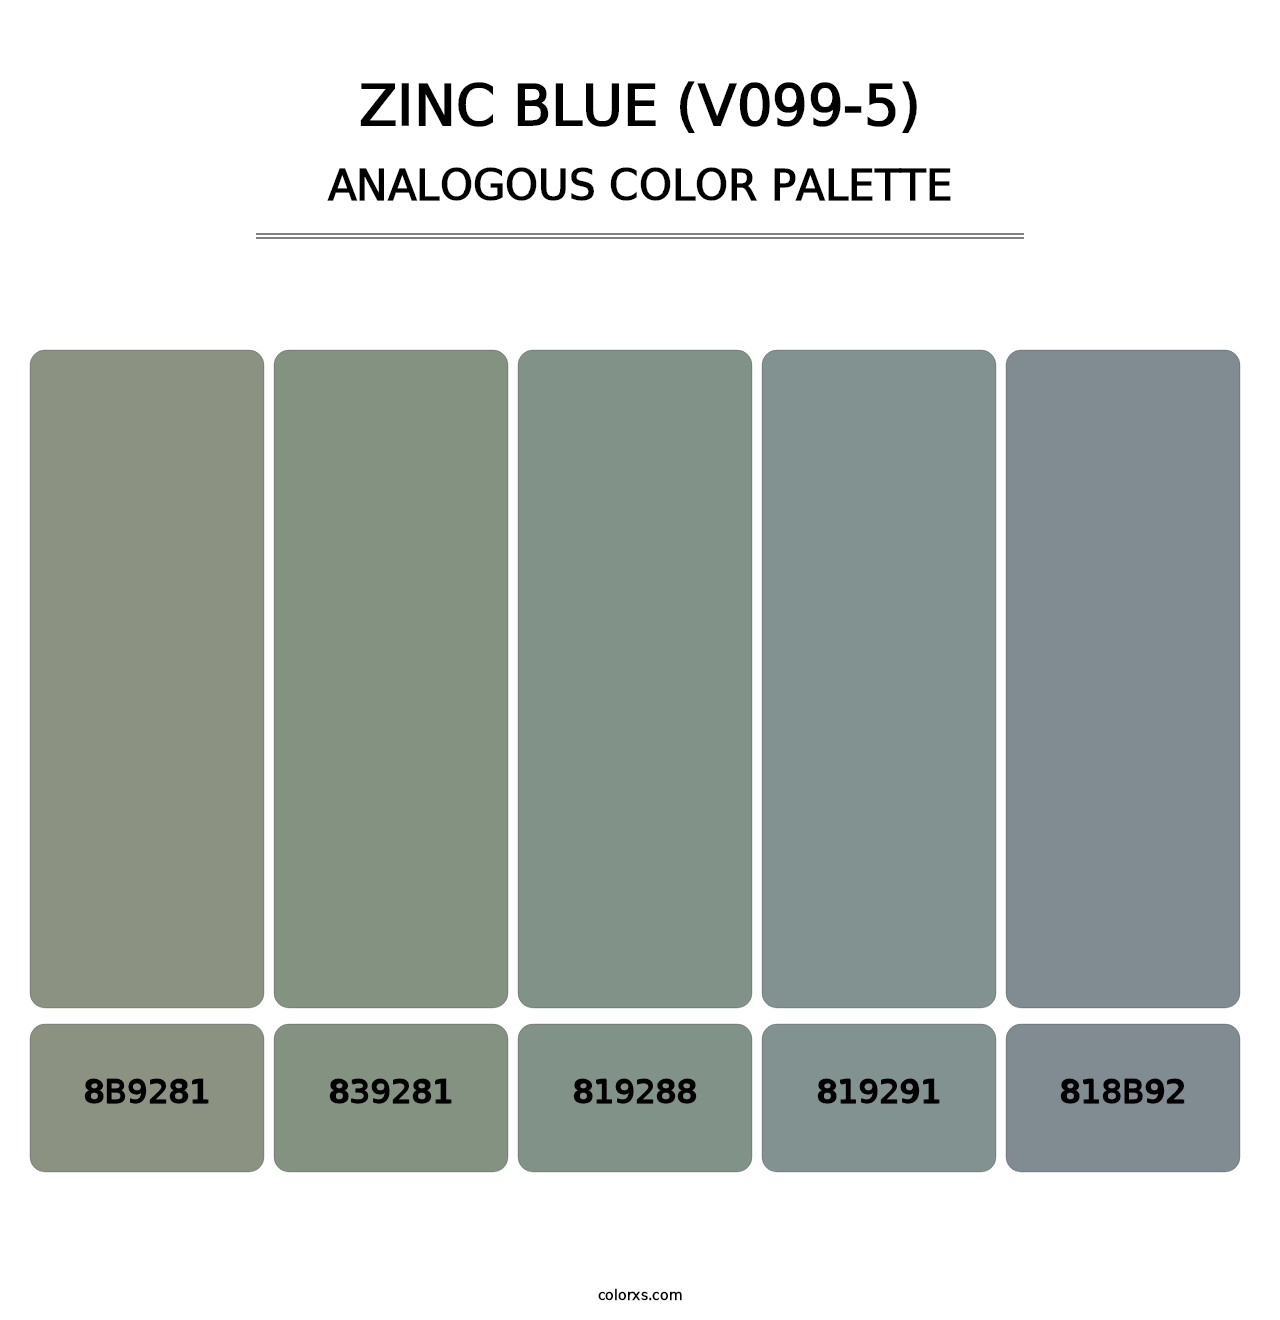 Zinc Blue (V099-5) - Analogous Color Palette